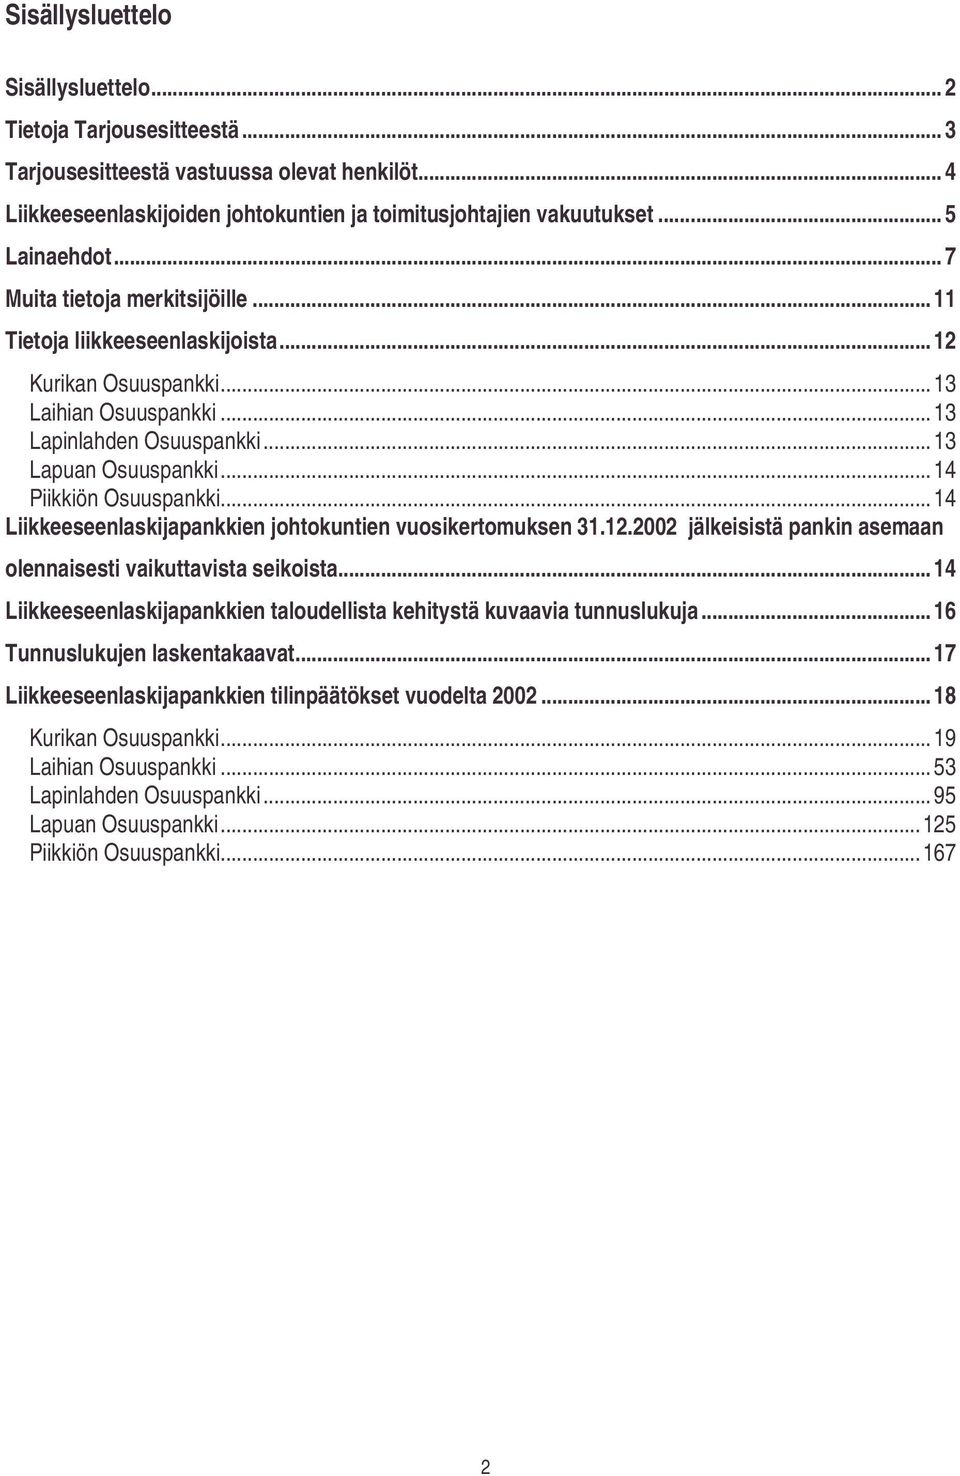 .. 14 Piikkiön Osuuspankki... 14 Liikkeeseenlaskijapankkien johtokuntien vuosikertomuksen 31.12.2002 jälkeisistä pankin asemaan olennaisesti vaikuttavista seikoista.